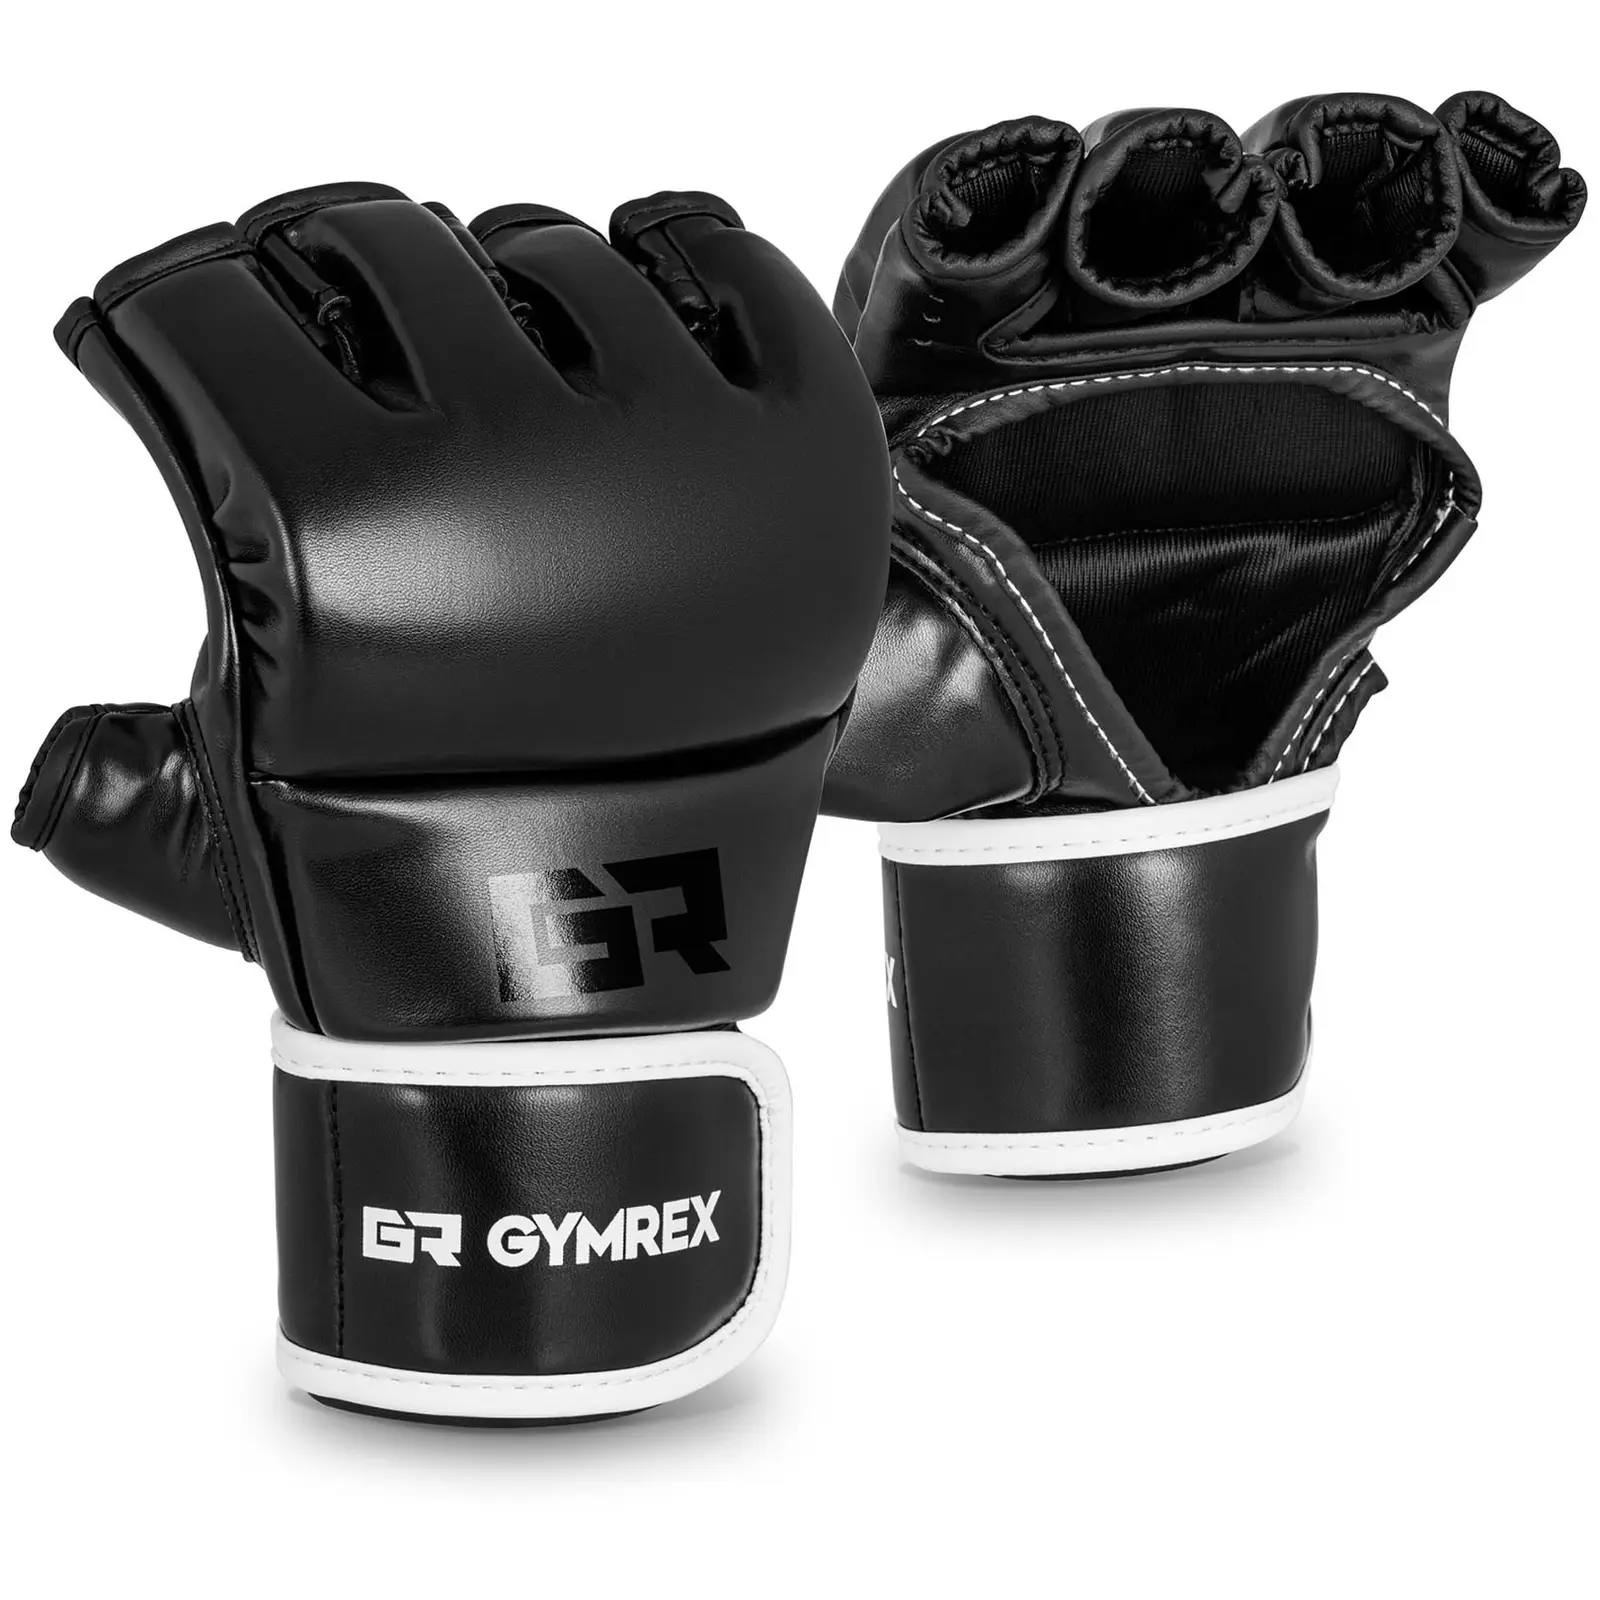 MMA rukavice - vel. S/M - černé